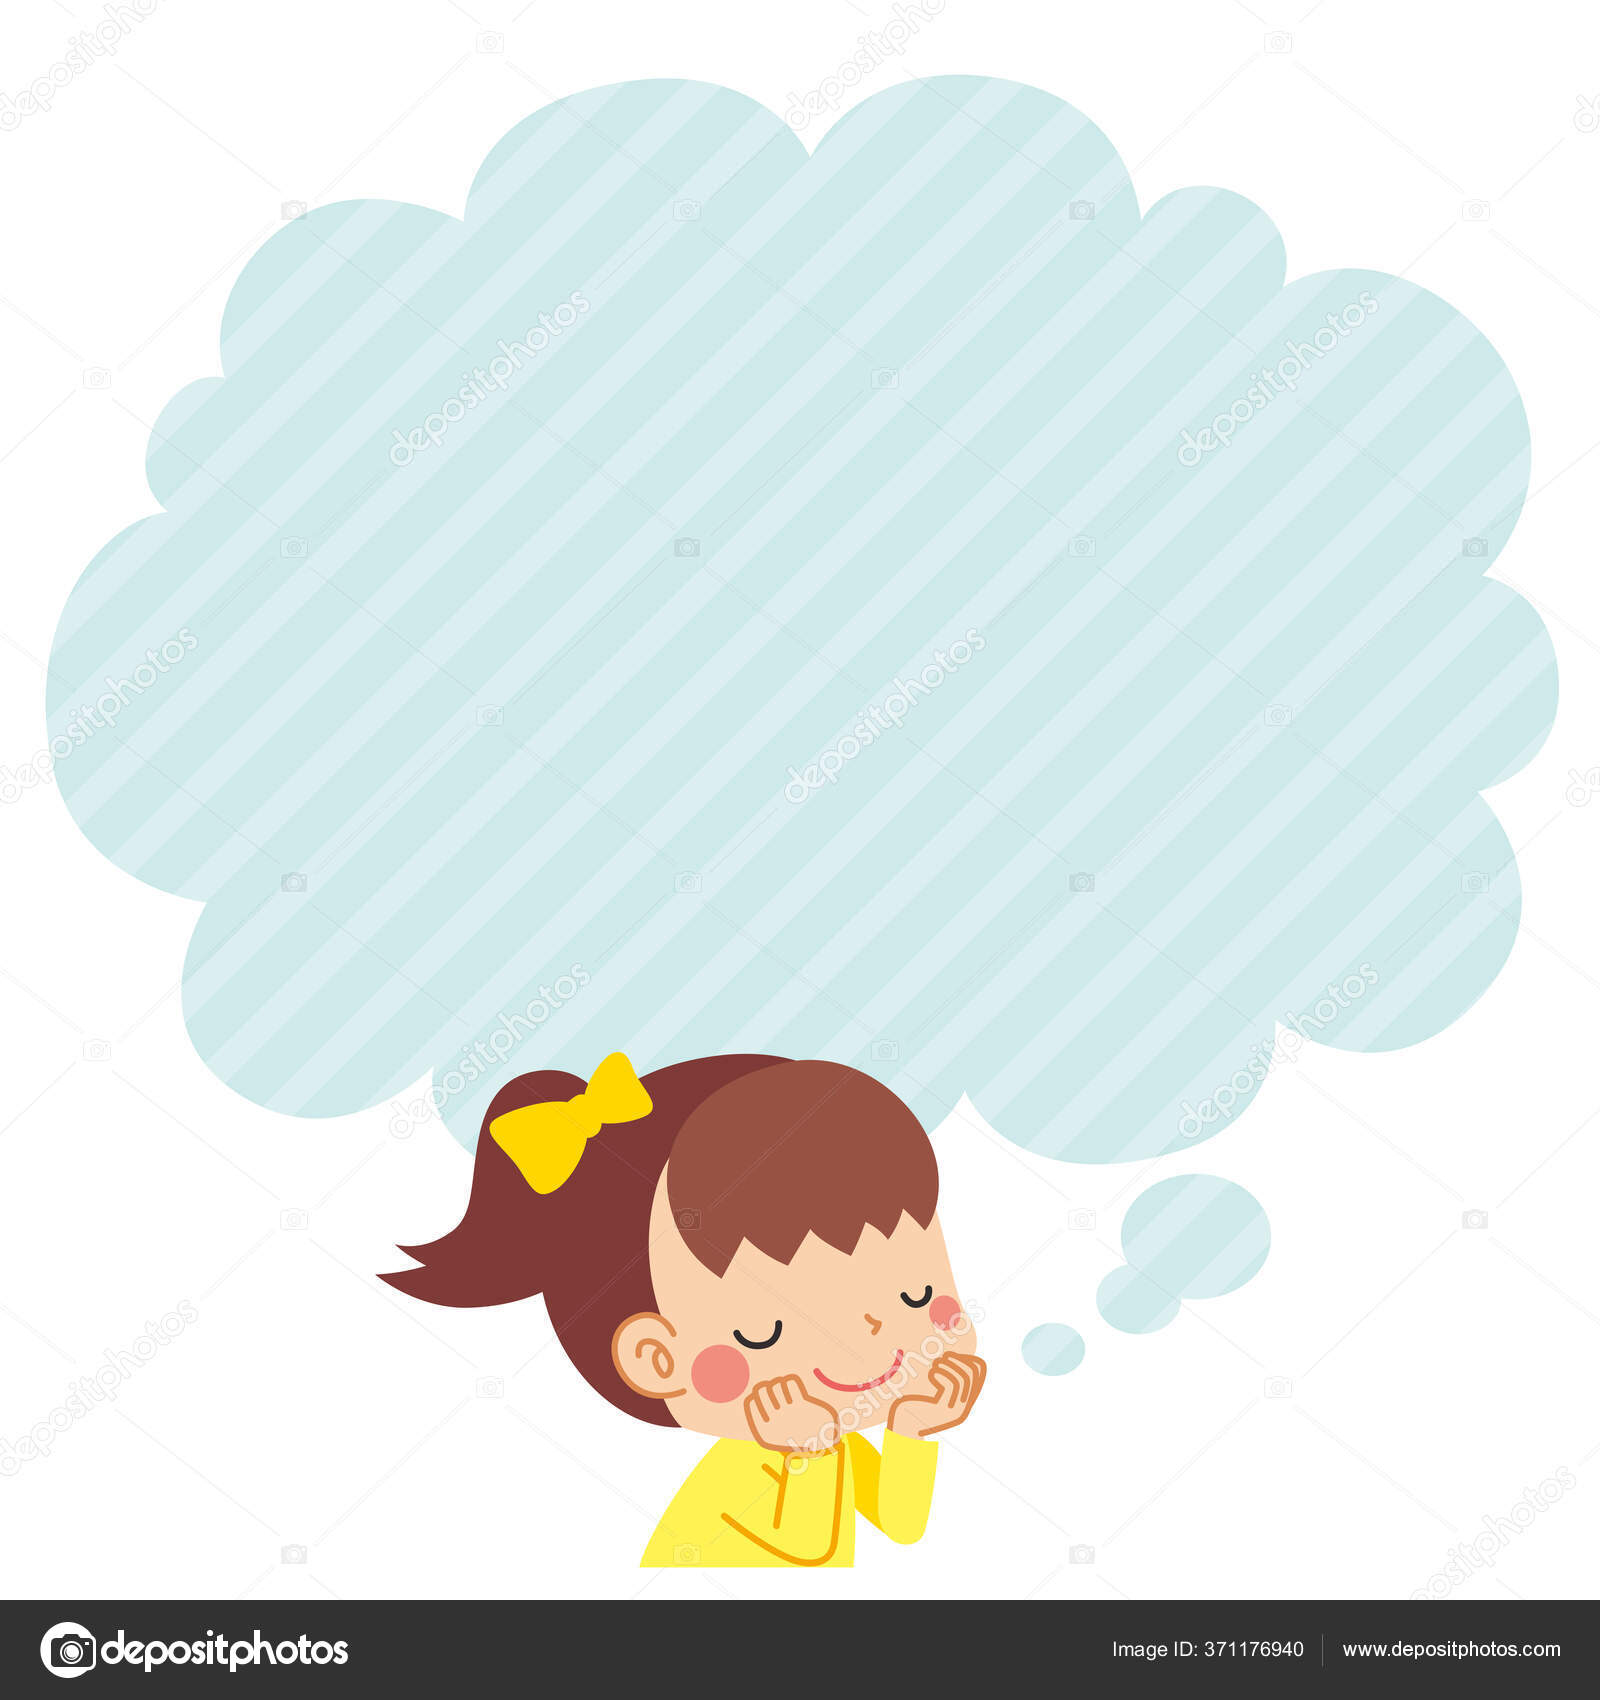 little girl thinking cartoon